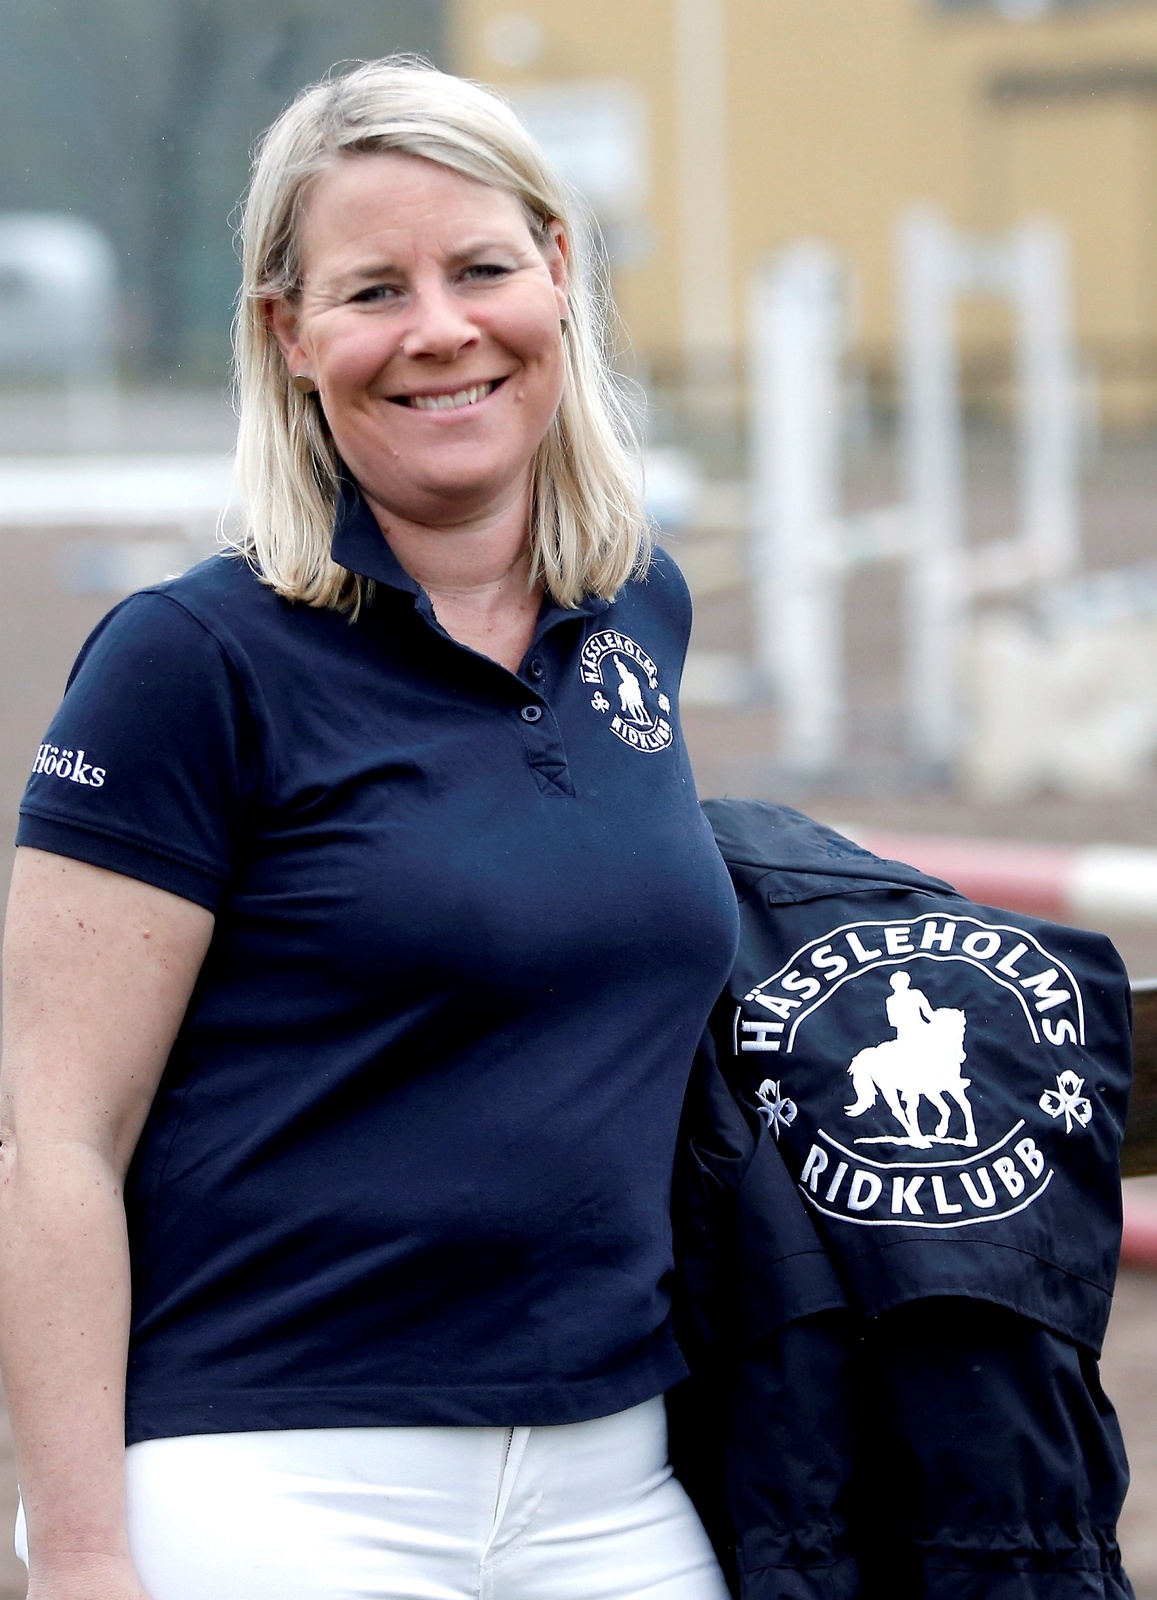 Ulrika Olsson, Hässleholms Ridklubb, Nominerad till Bedrupsstipendiet 2019. Foto: Stefan Sandström